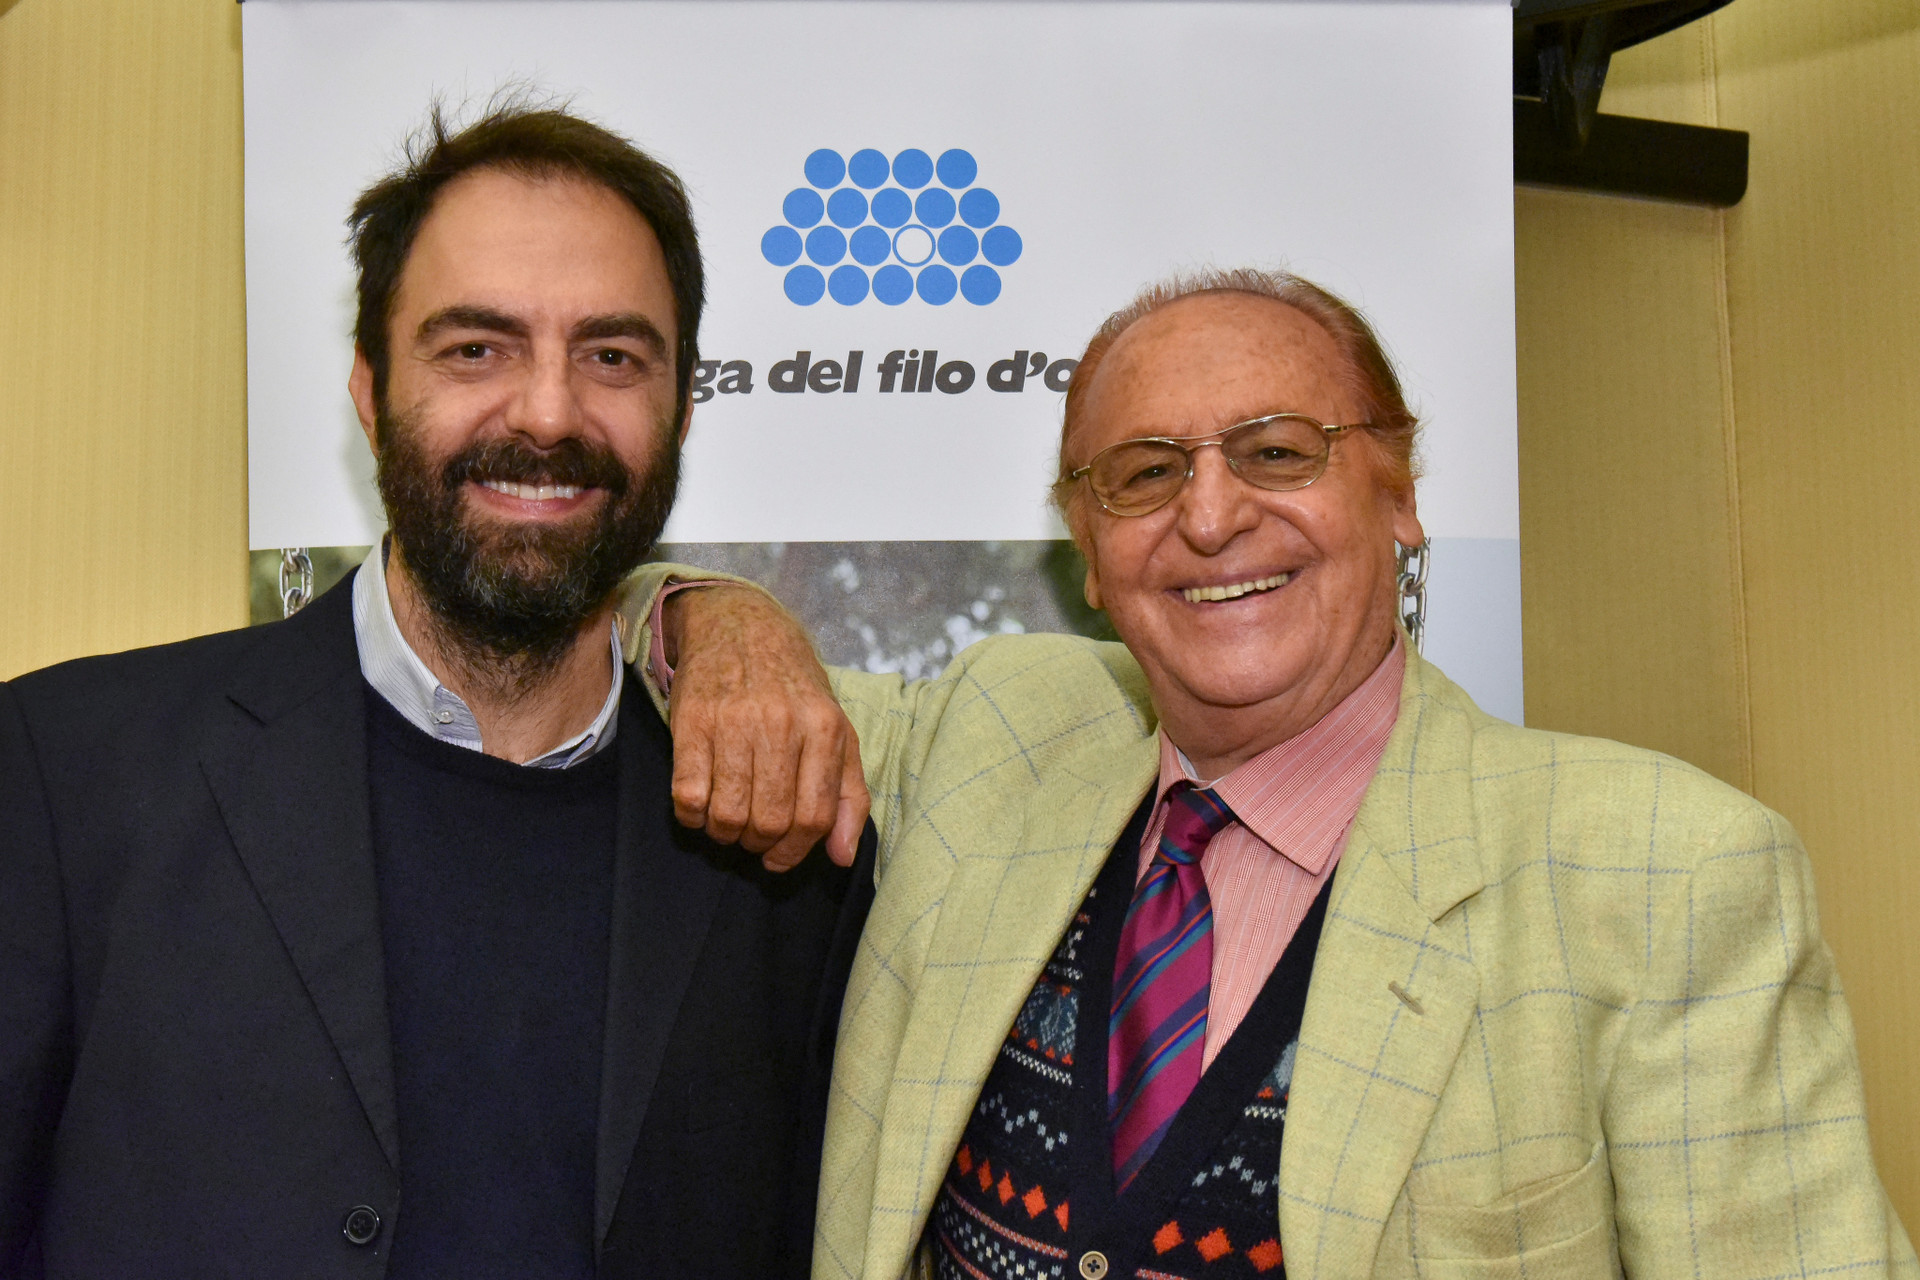 Renzo Arbore e Neri Marcore sorridenti posano per una foto di fronte al logo Lega del Filo d'Oro